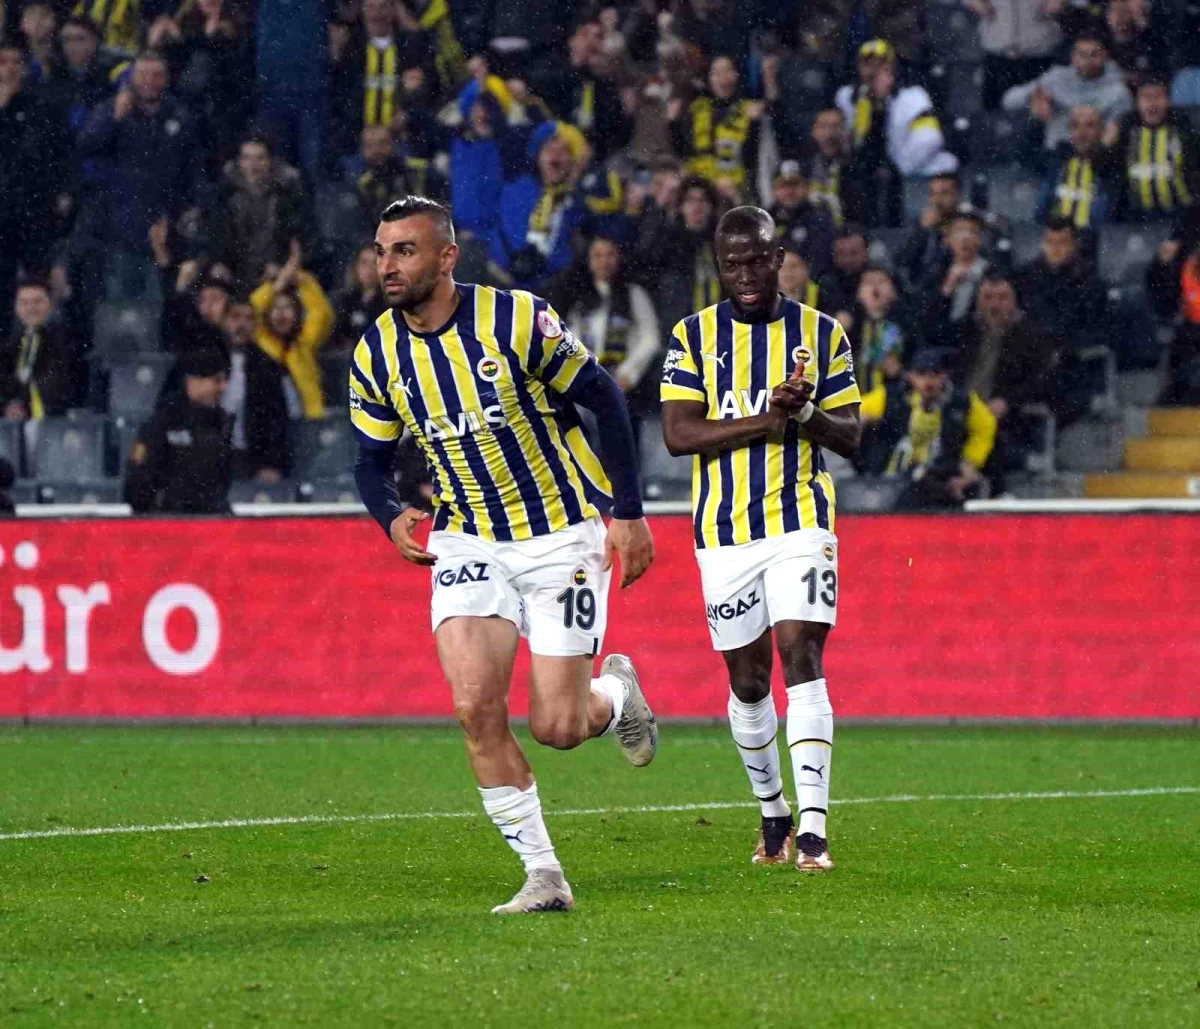 Ziraat Türkiye Kupası: Fenerbahçe: 2 - Kayserispor: 1 (İlk yarı)